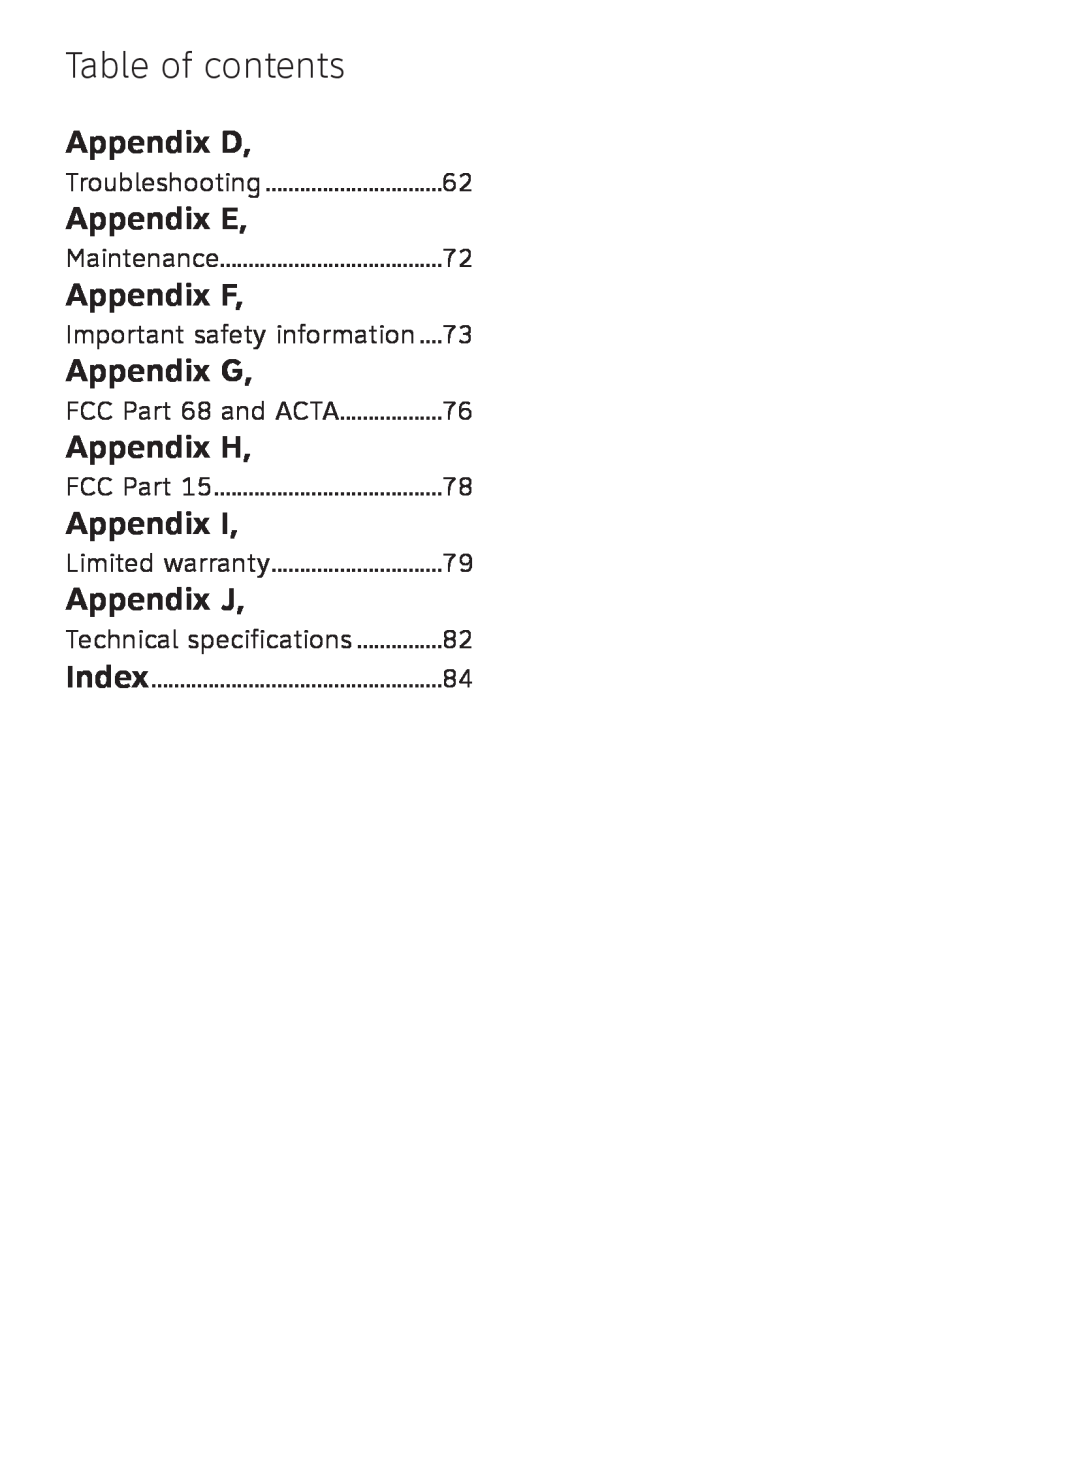 AT&T TL91378 Appendix D, Appendix E, Appendix F, Appendix G, Appendix H, Appendix J, Table of contents, Limited warranty 